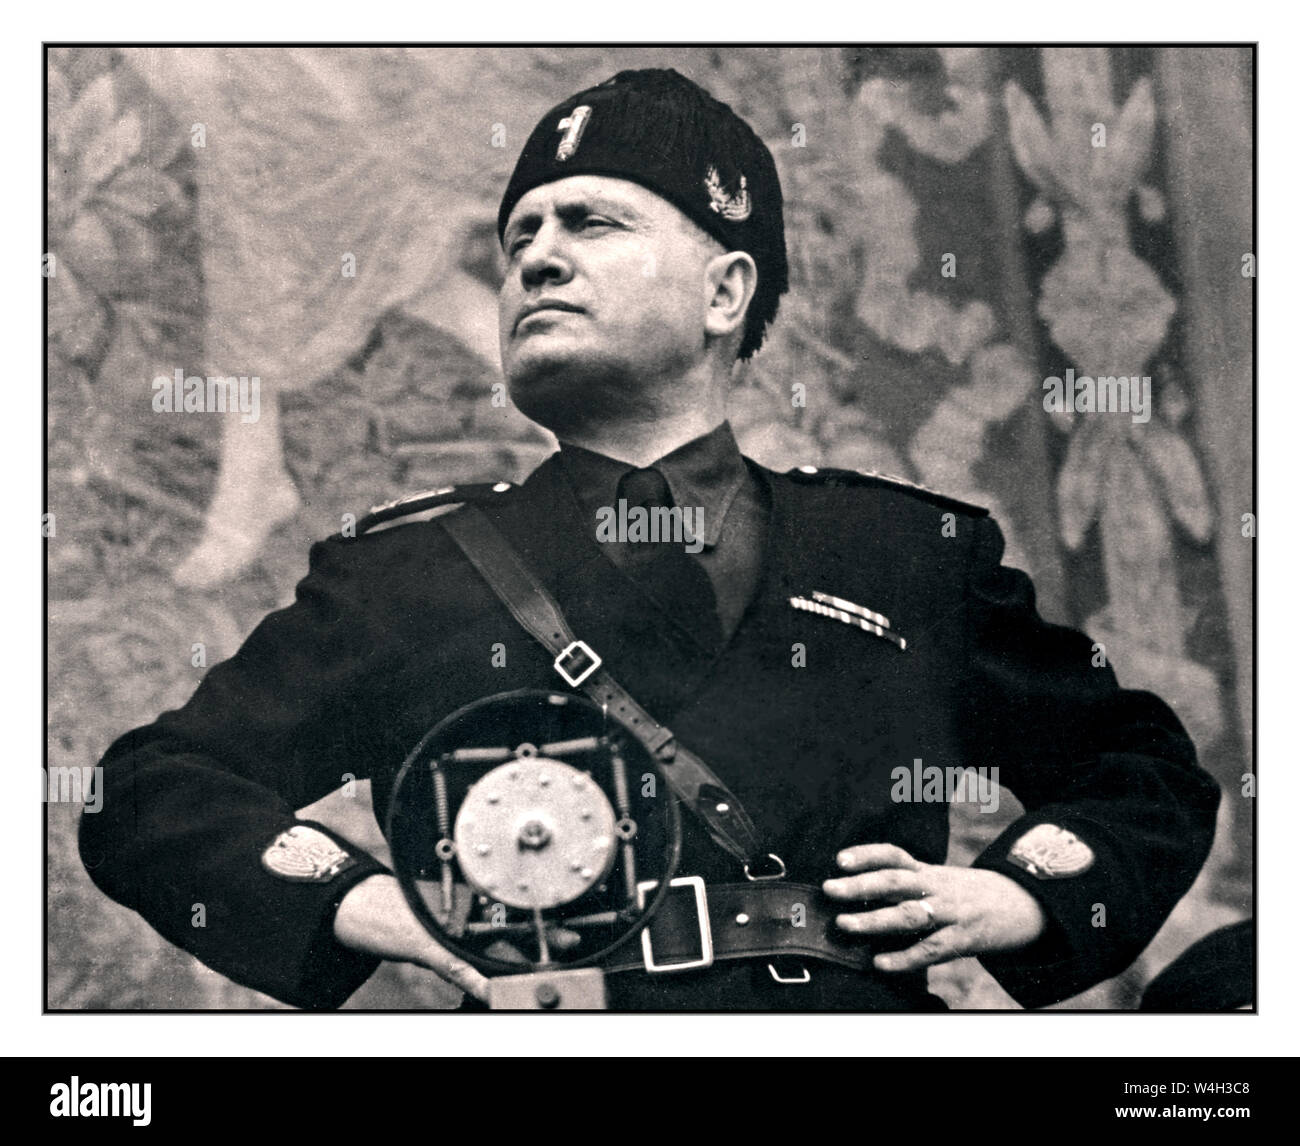 MUSSOLINI UNIFORM PODIUM MIKROFON REDE Jahrgang WW2 Bild von Benito Mussolini IL DUCE ein italienischer Politiker, Journalist und Führer der Nationalen Faschistischen Partei, Von 1922 bis zu seiner Tötung im Jahr 1943 regierte er das Land als Premierminister - verfassungsmäßig bis 1925, als er alle Vortäuschung der Demokratie abwarf und als Diktator regierte. Stockfoto